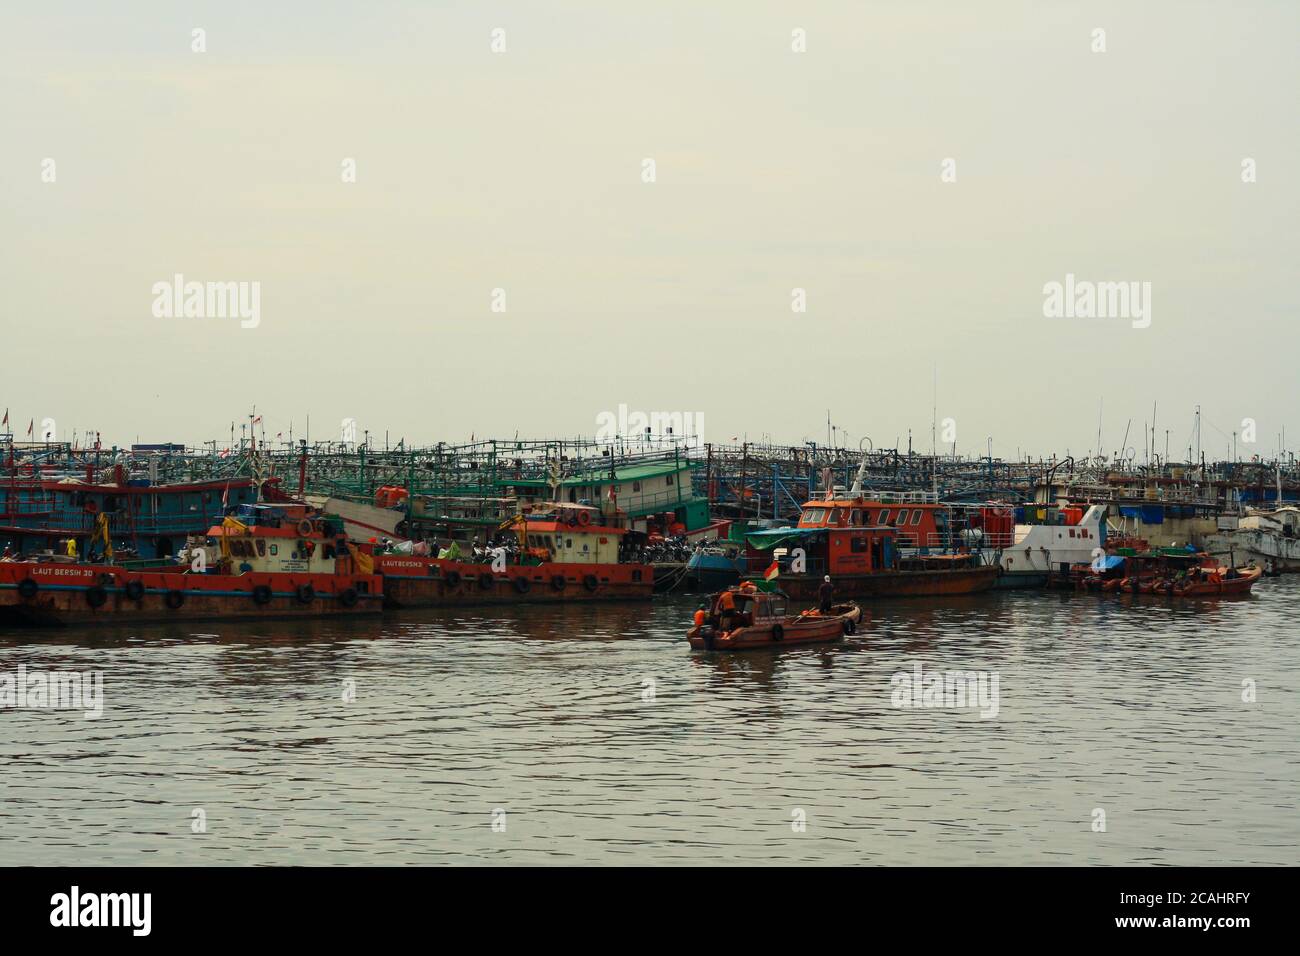 Jakarta, Indonesia - April 21, 2019: Fishing boats anchored at the Muara Angke Port, Penjaringan, North Jakarta. Stock Photo